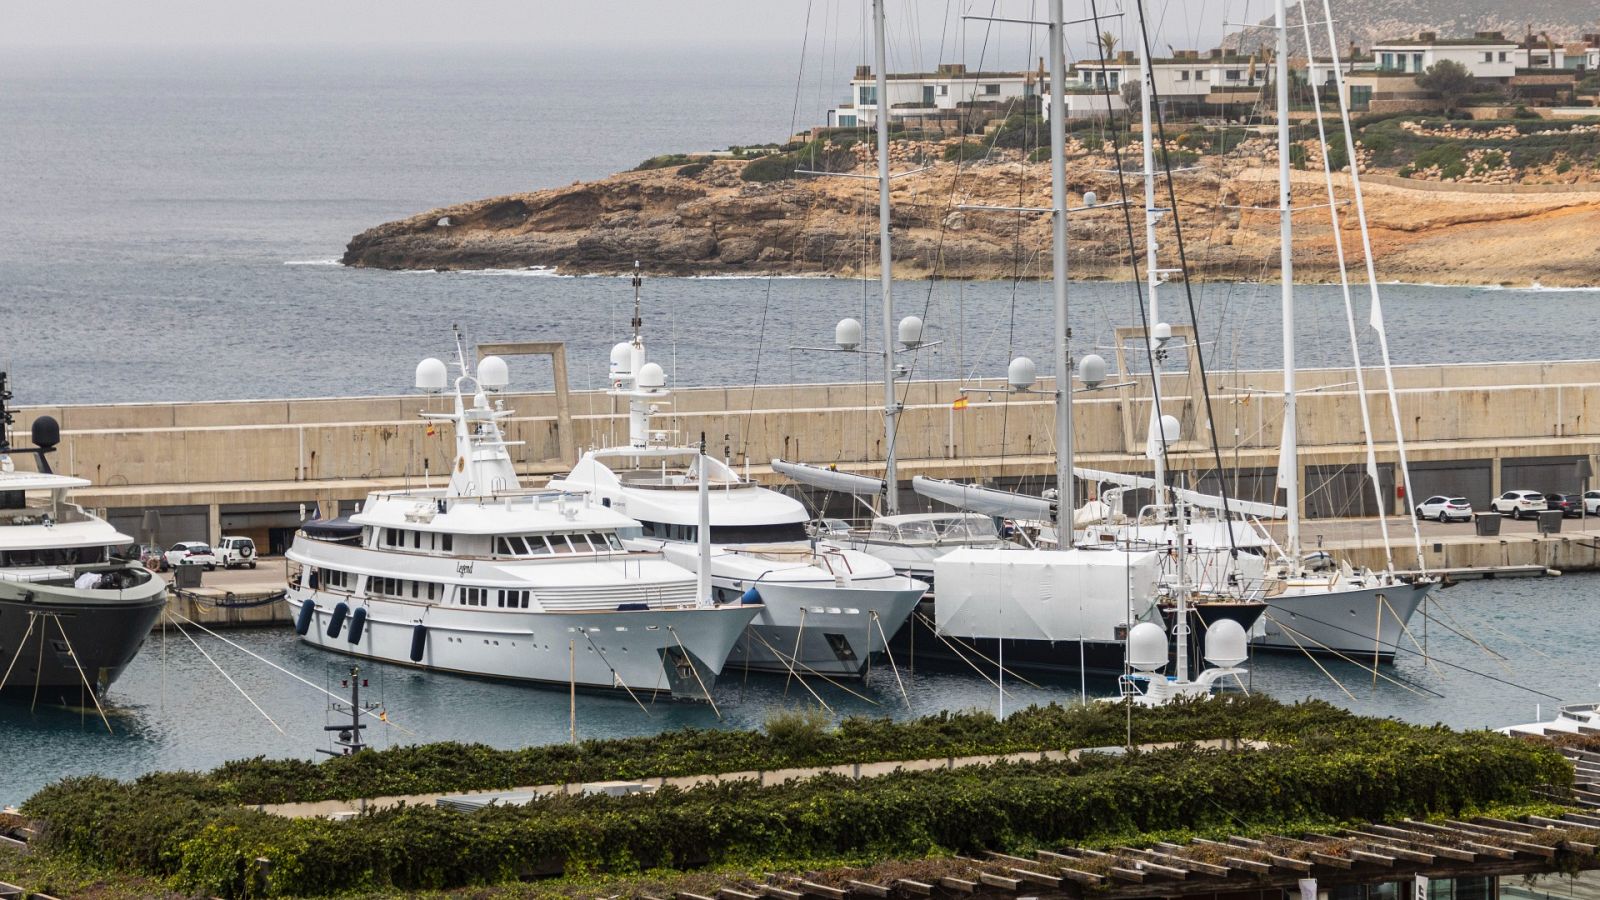 El yate "Lady Anastasia" (3d), retenido en Port Adriano (Mallorca) por las sanciones a Rusia